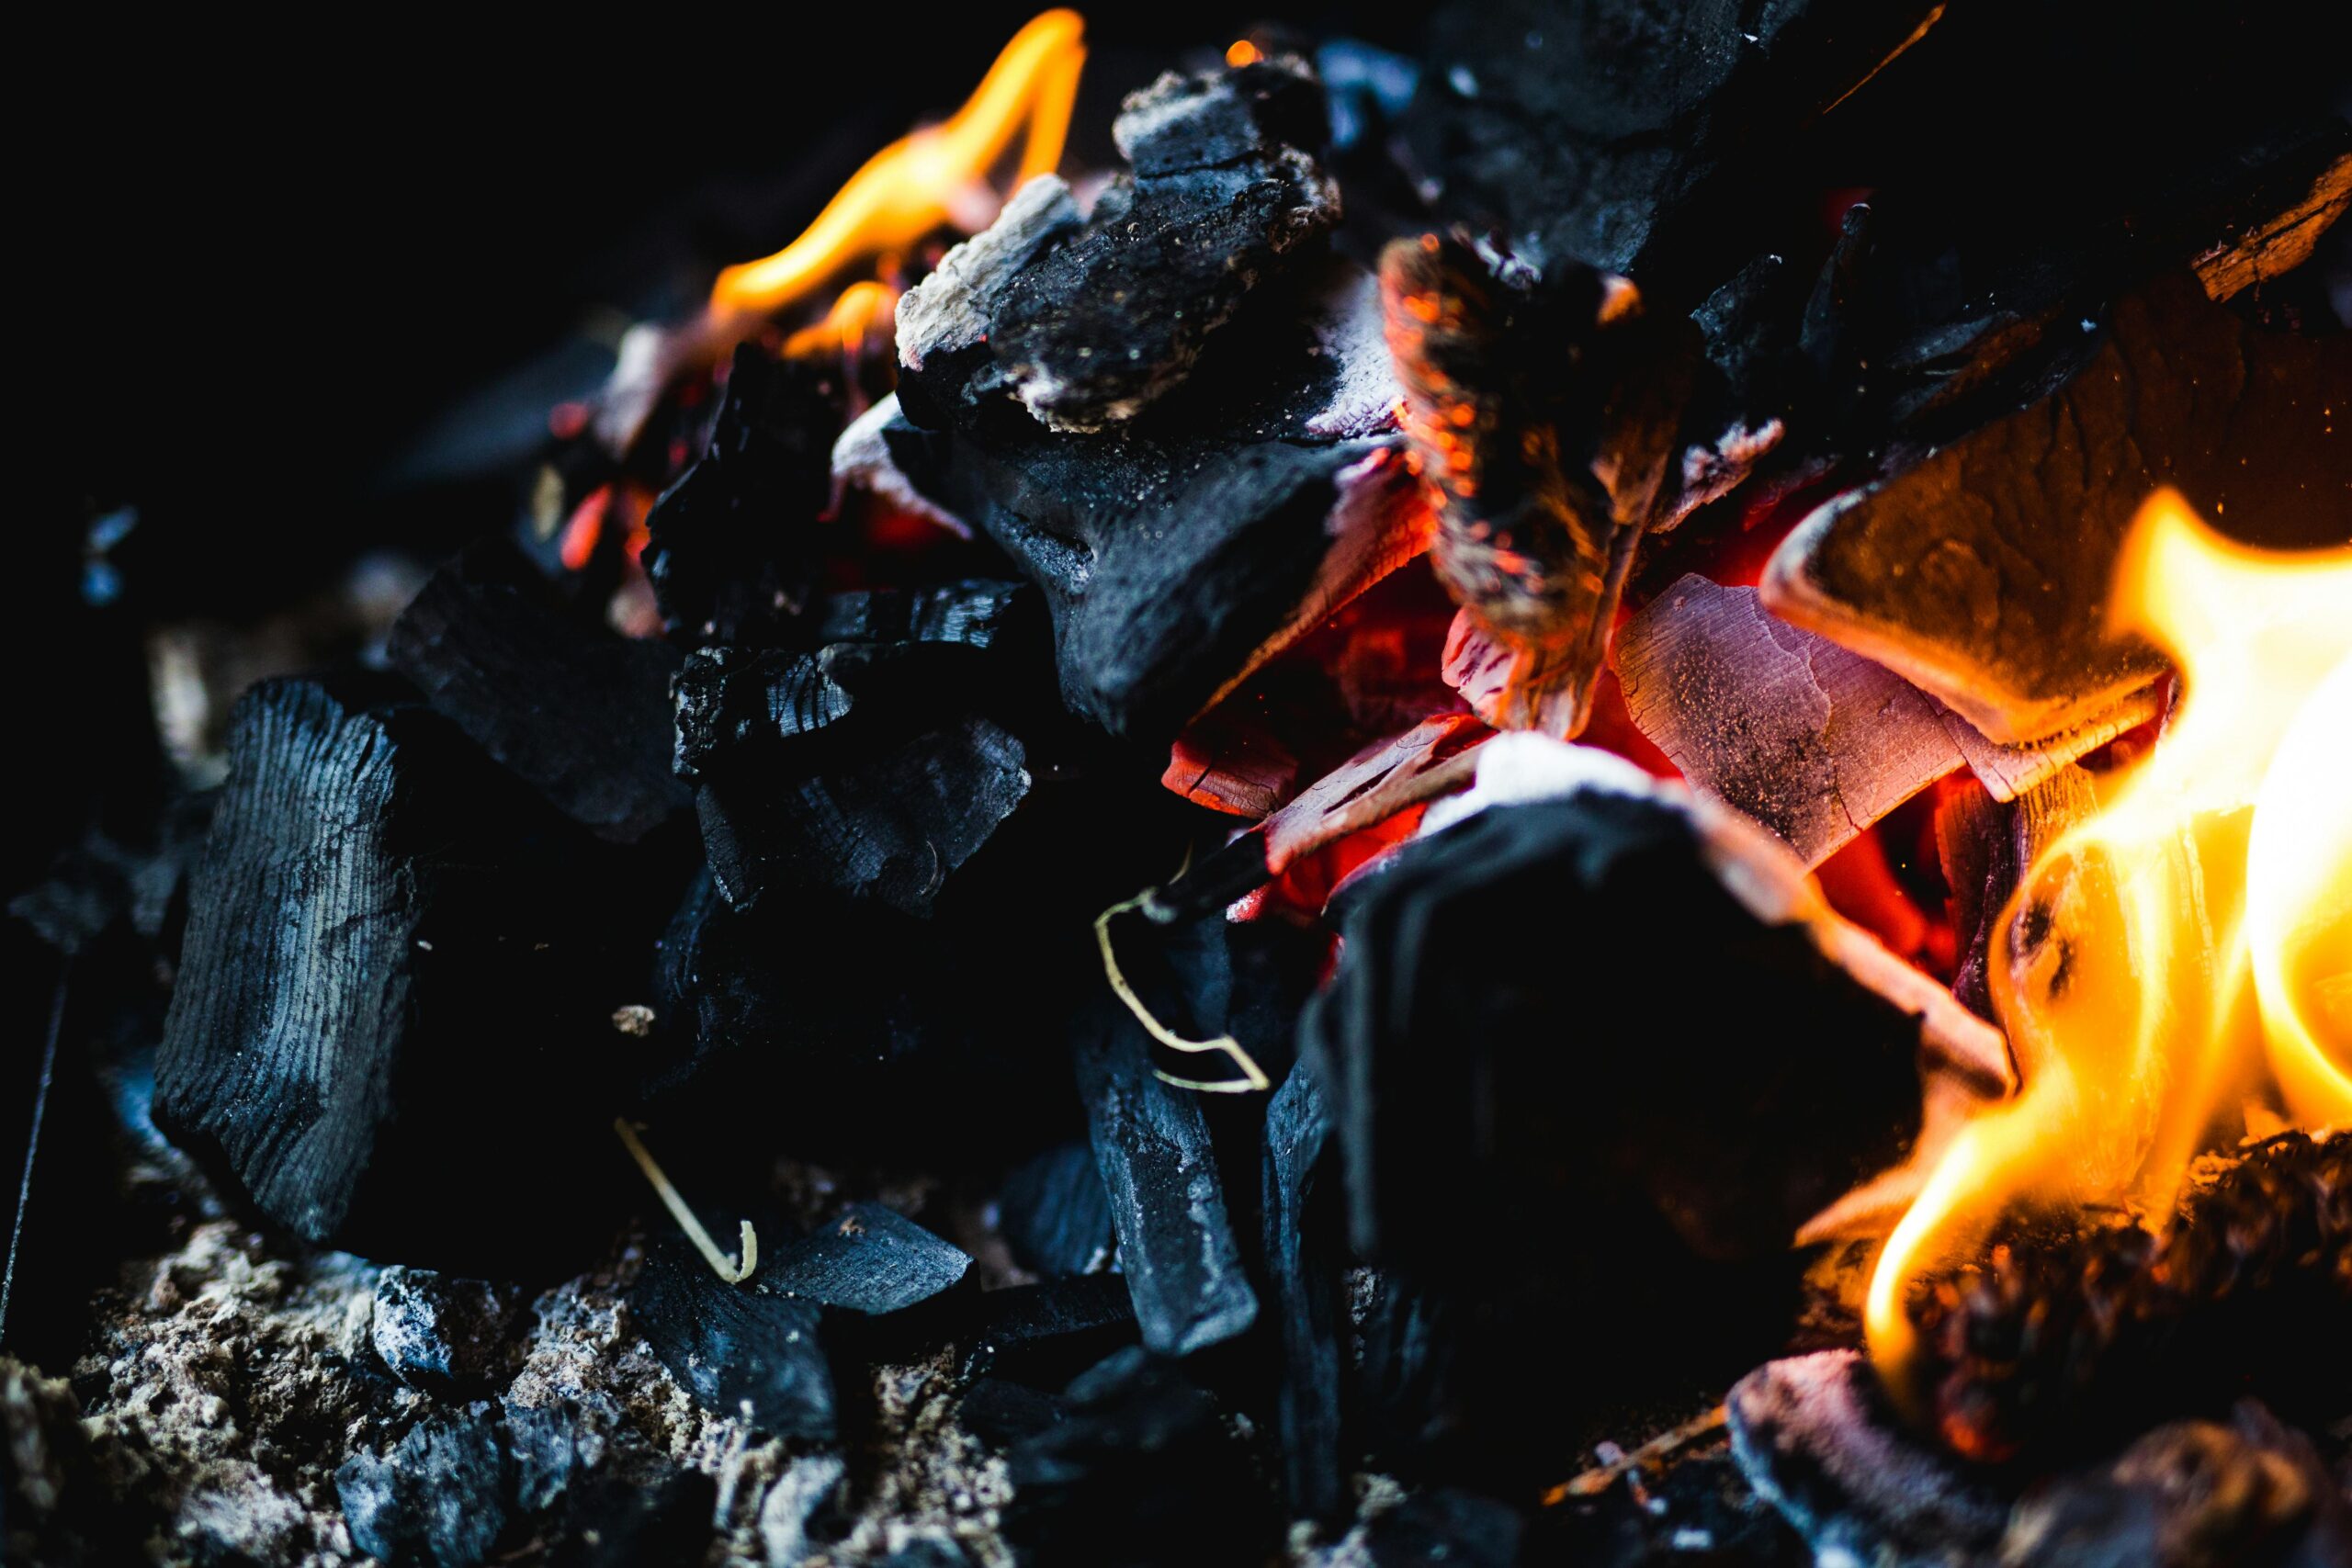 Carvão em chamas. Crédito: Pexels/Heiner/CC